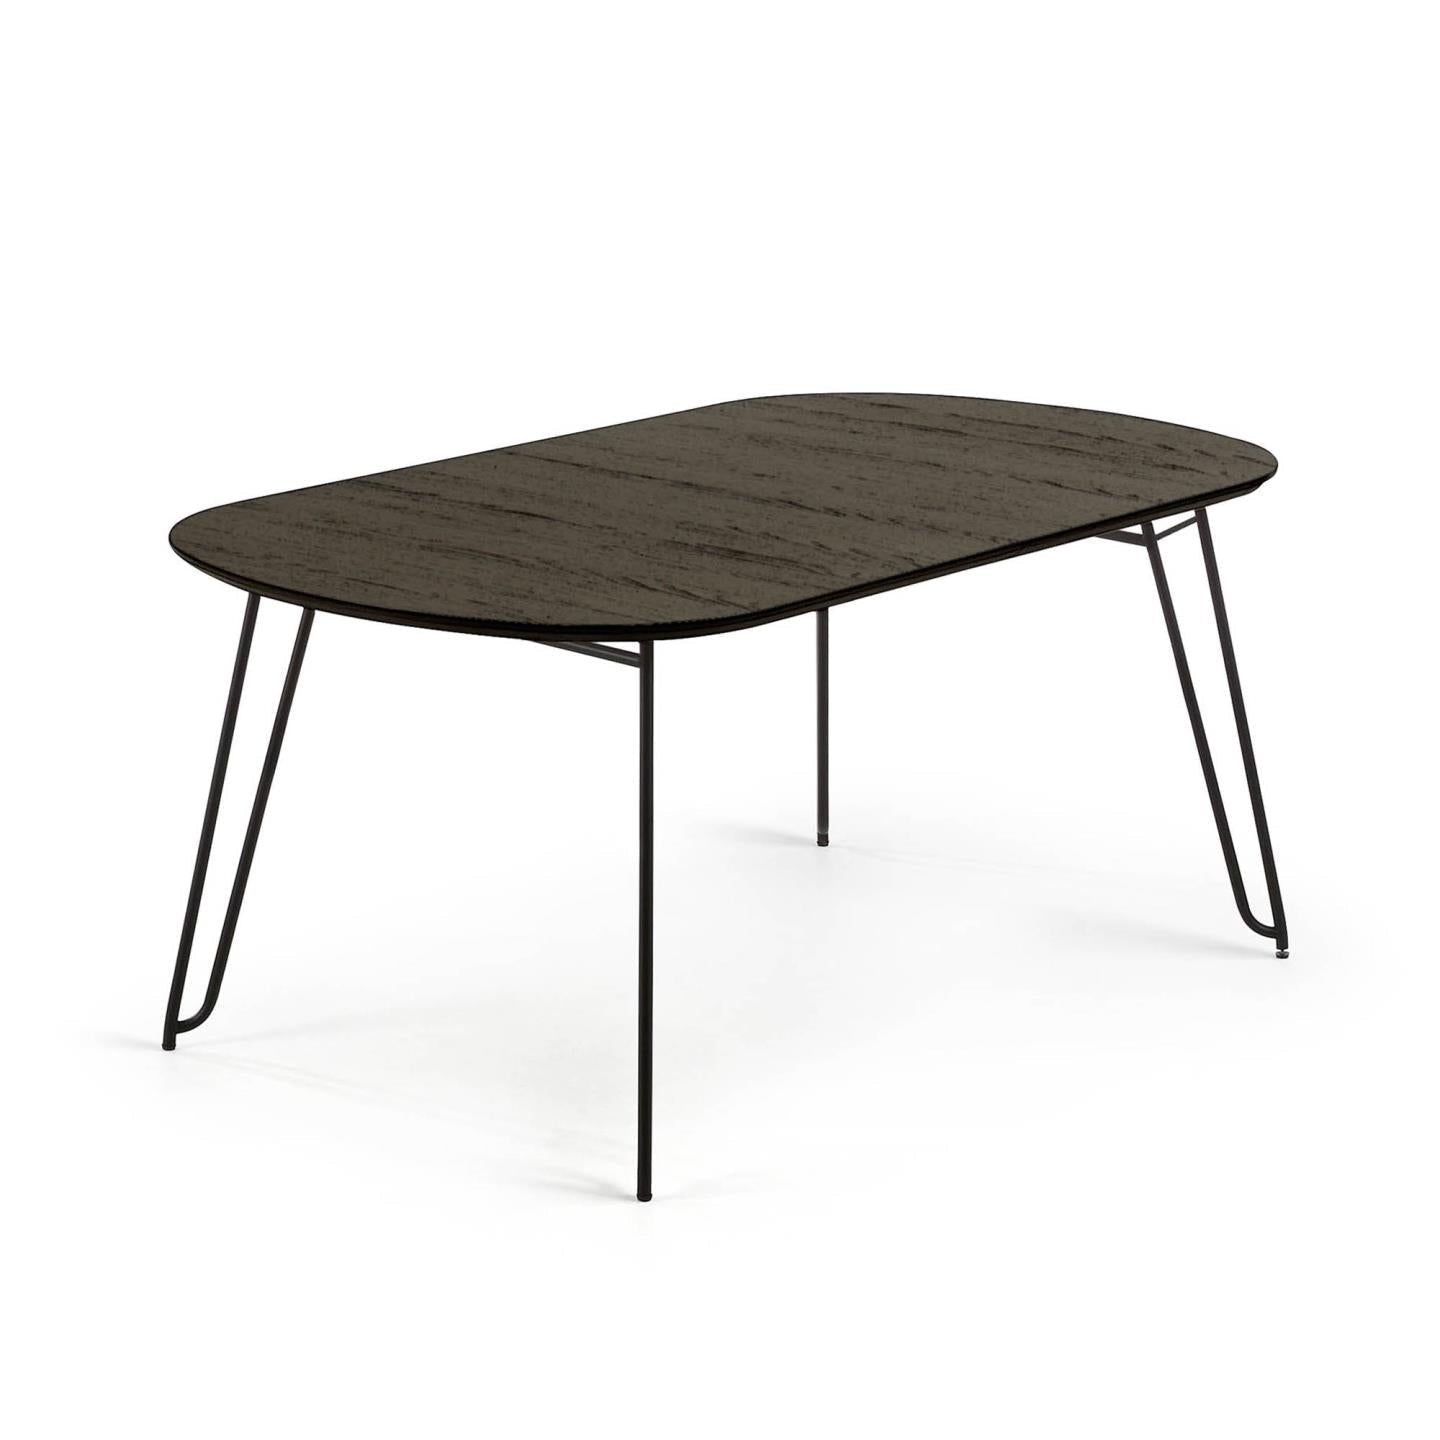 Kave Home Milian ausziehbarer Tisch Eschenfurnier und schwarze Stahlbeine Schwarz-140 -> 220 x 90 x 75cm-NR009M01 #NR009M01